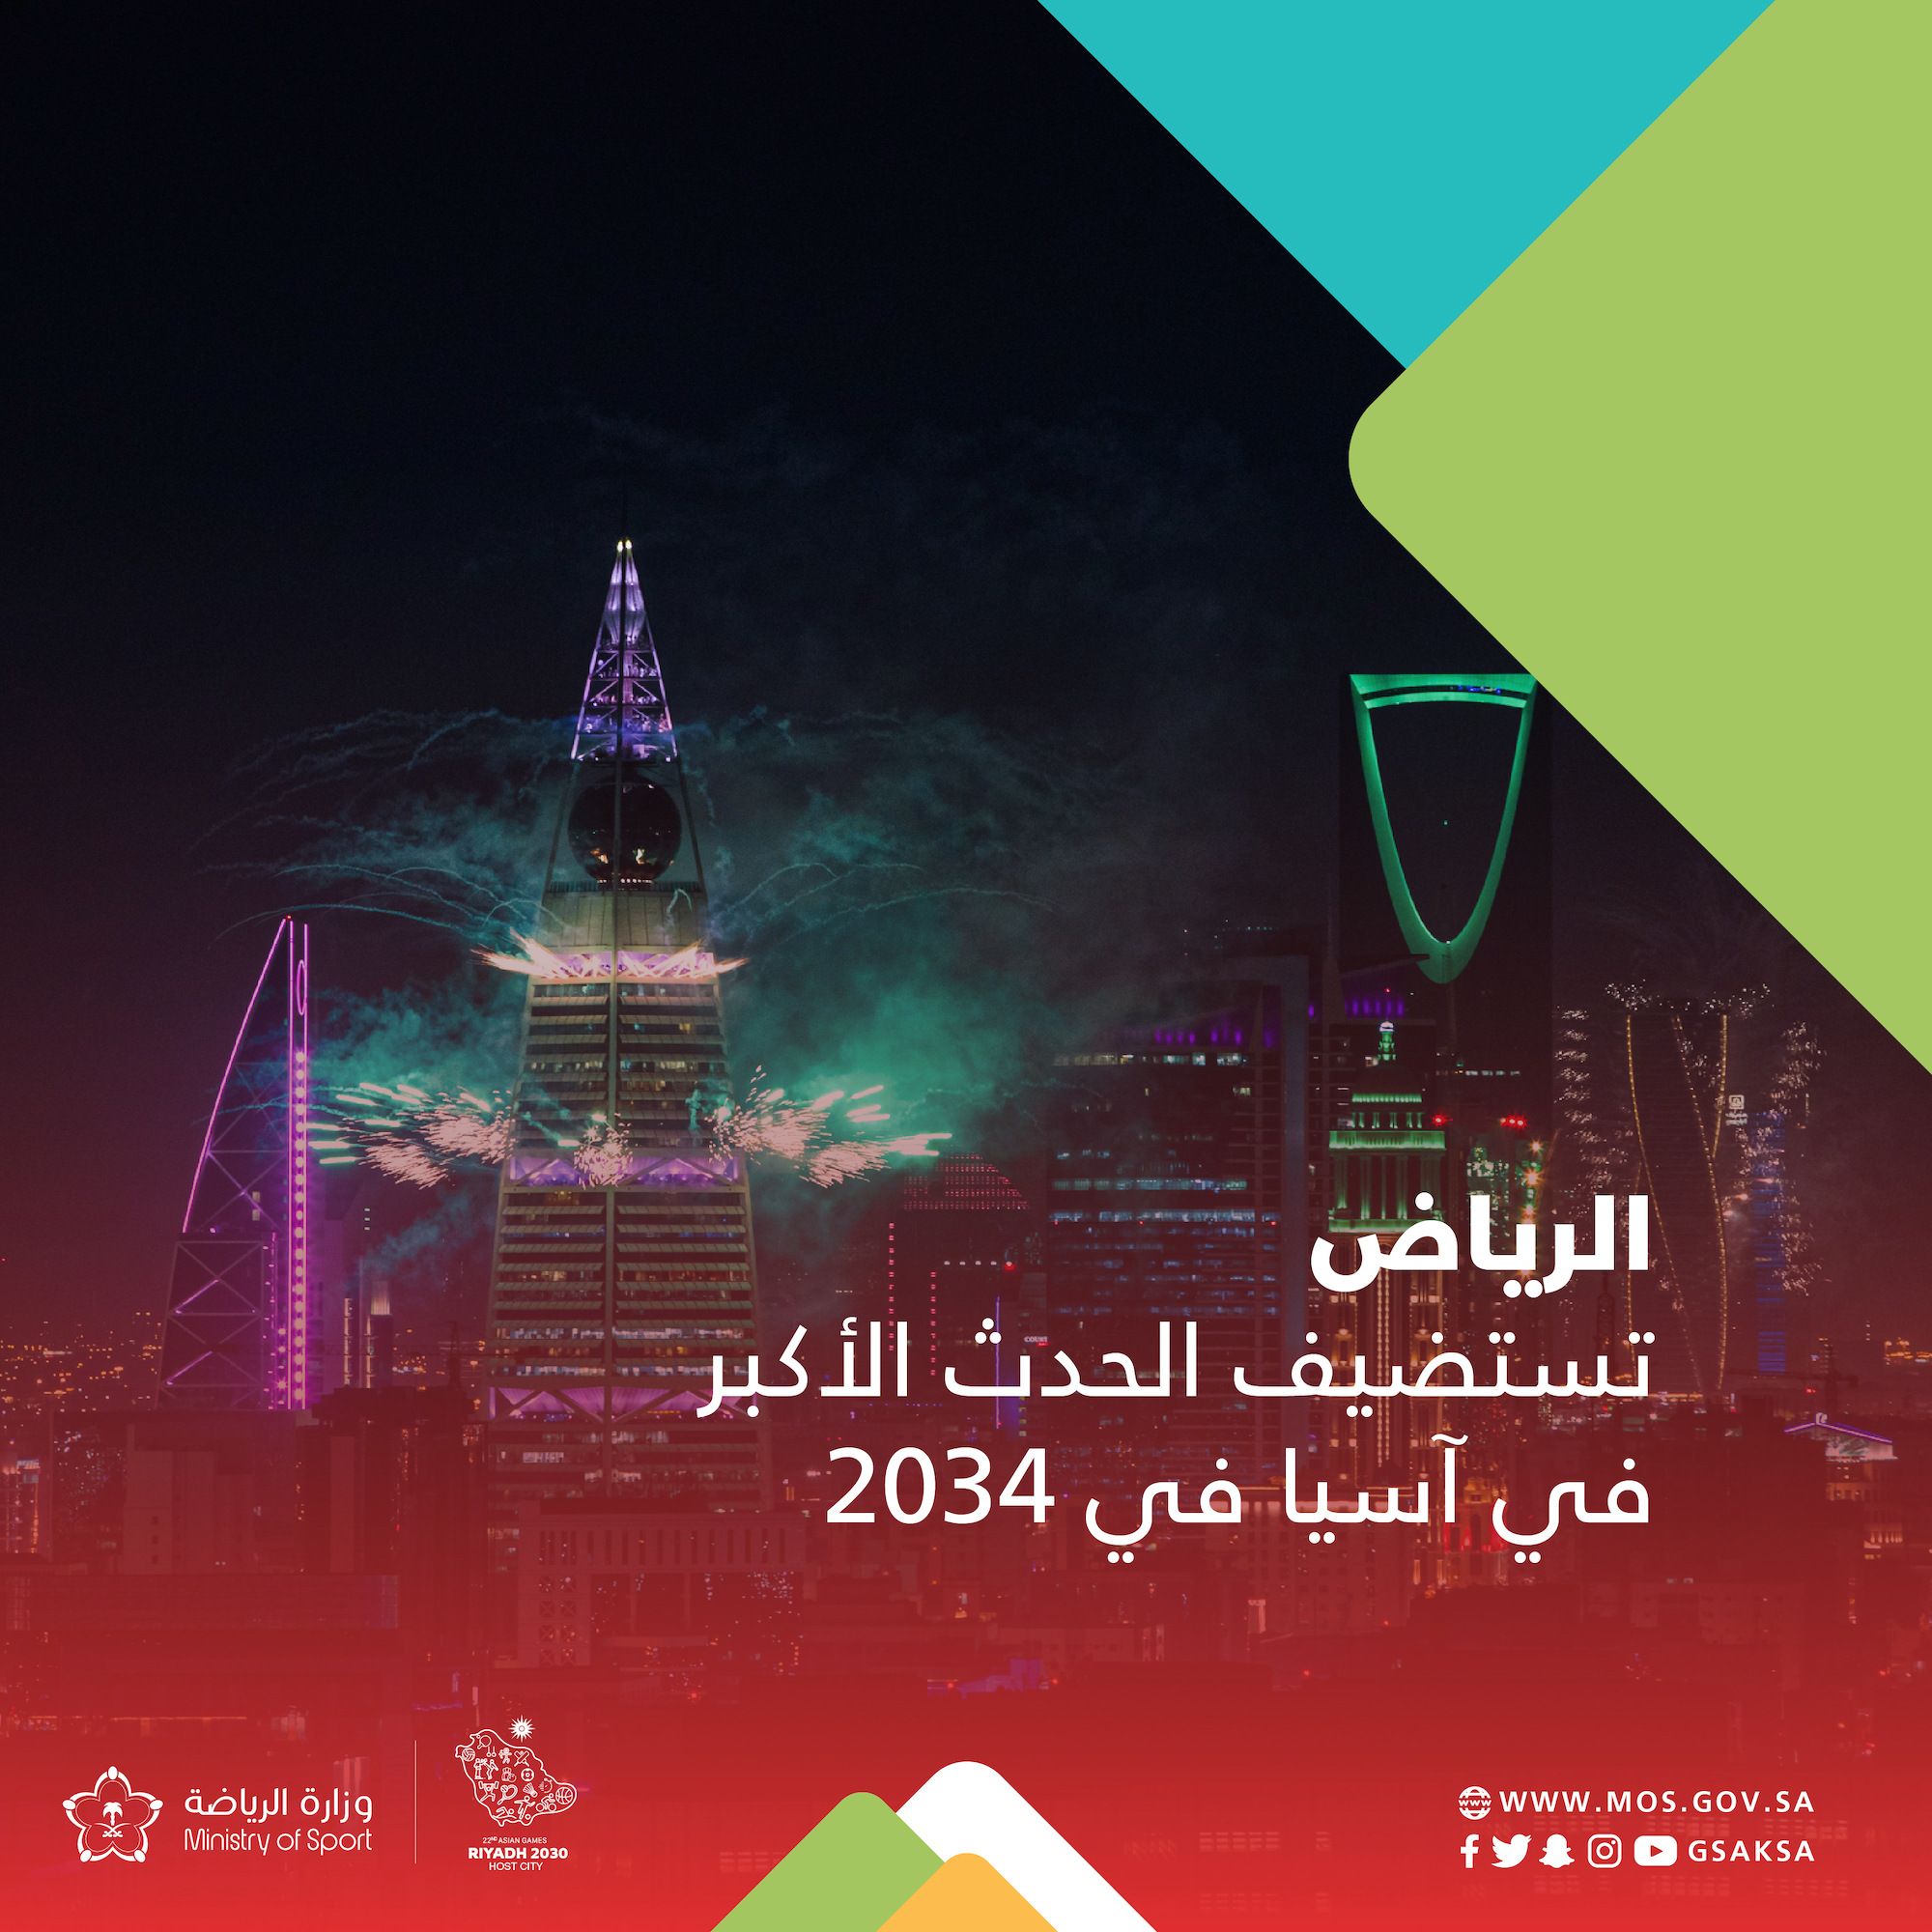 الرياض تستضيف دورة الألعاب الآسيوية 2034